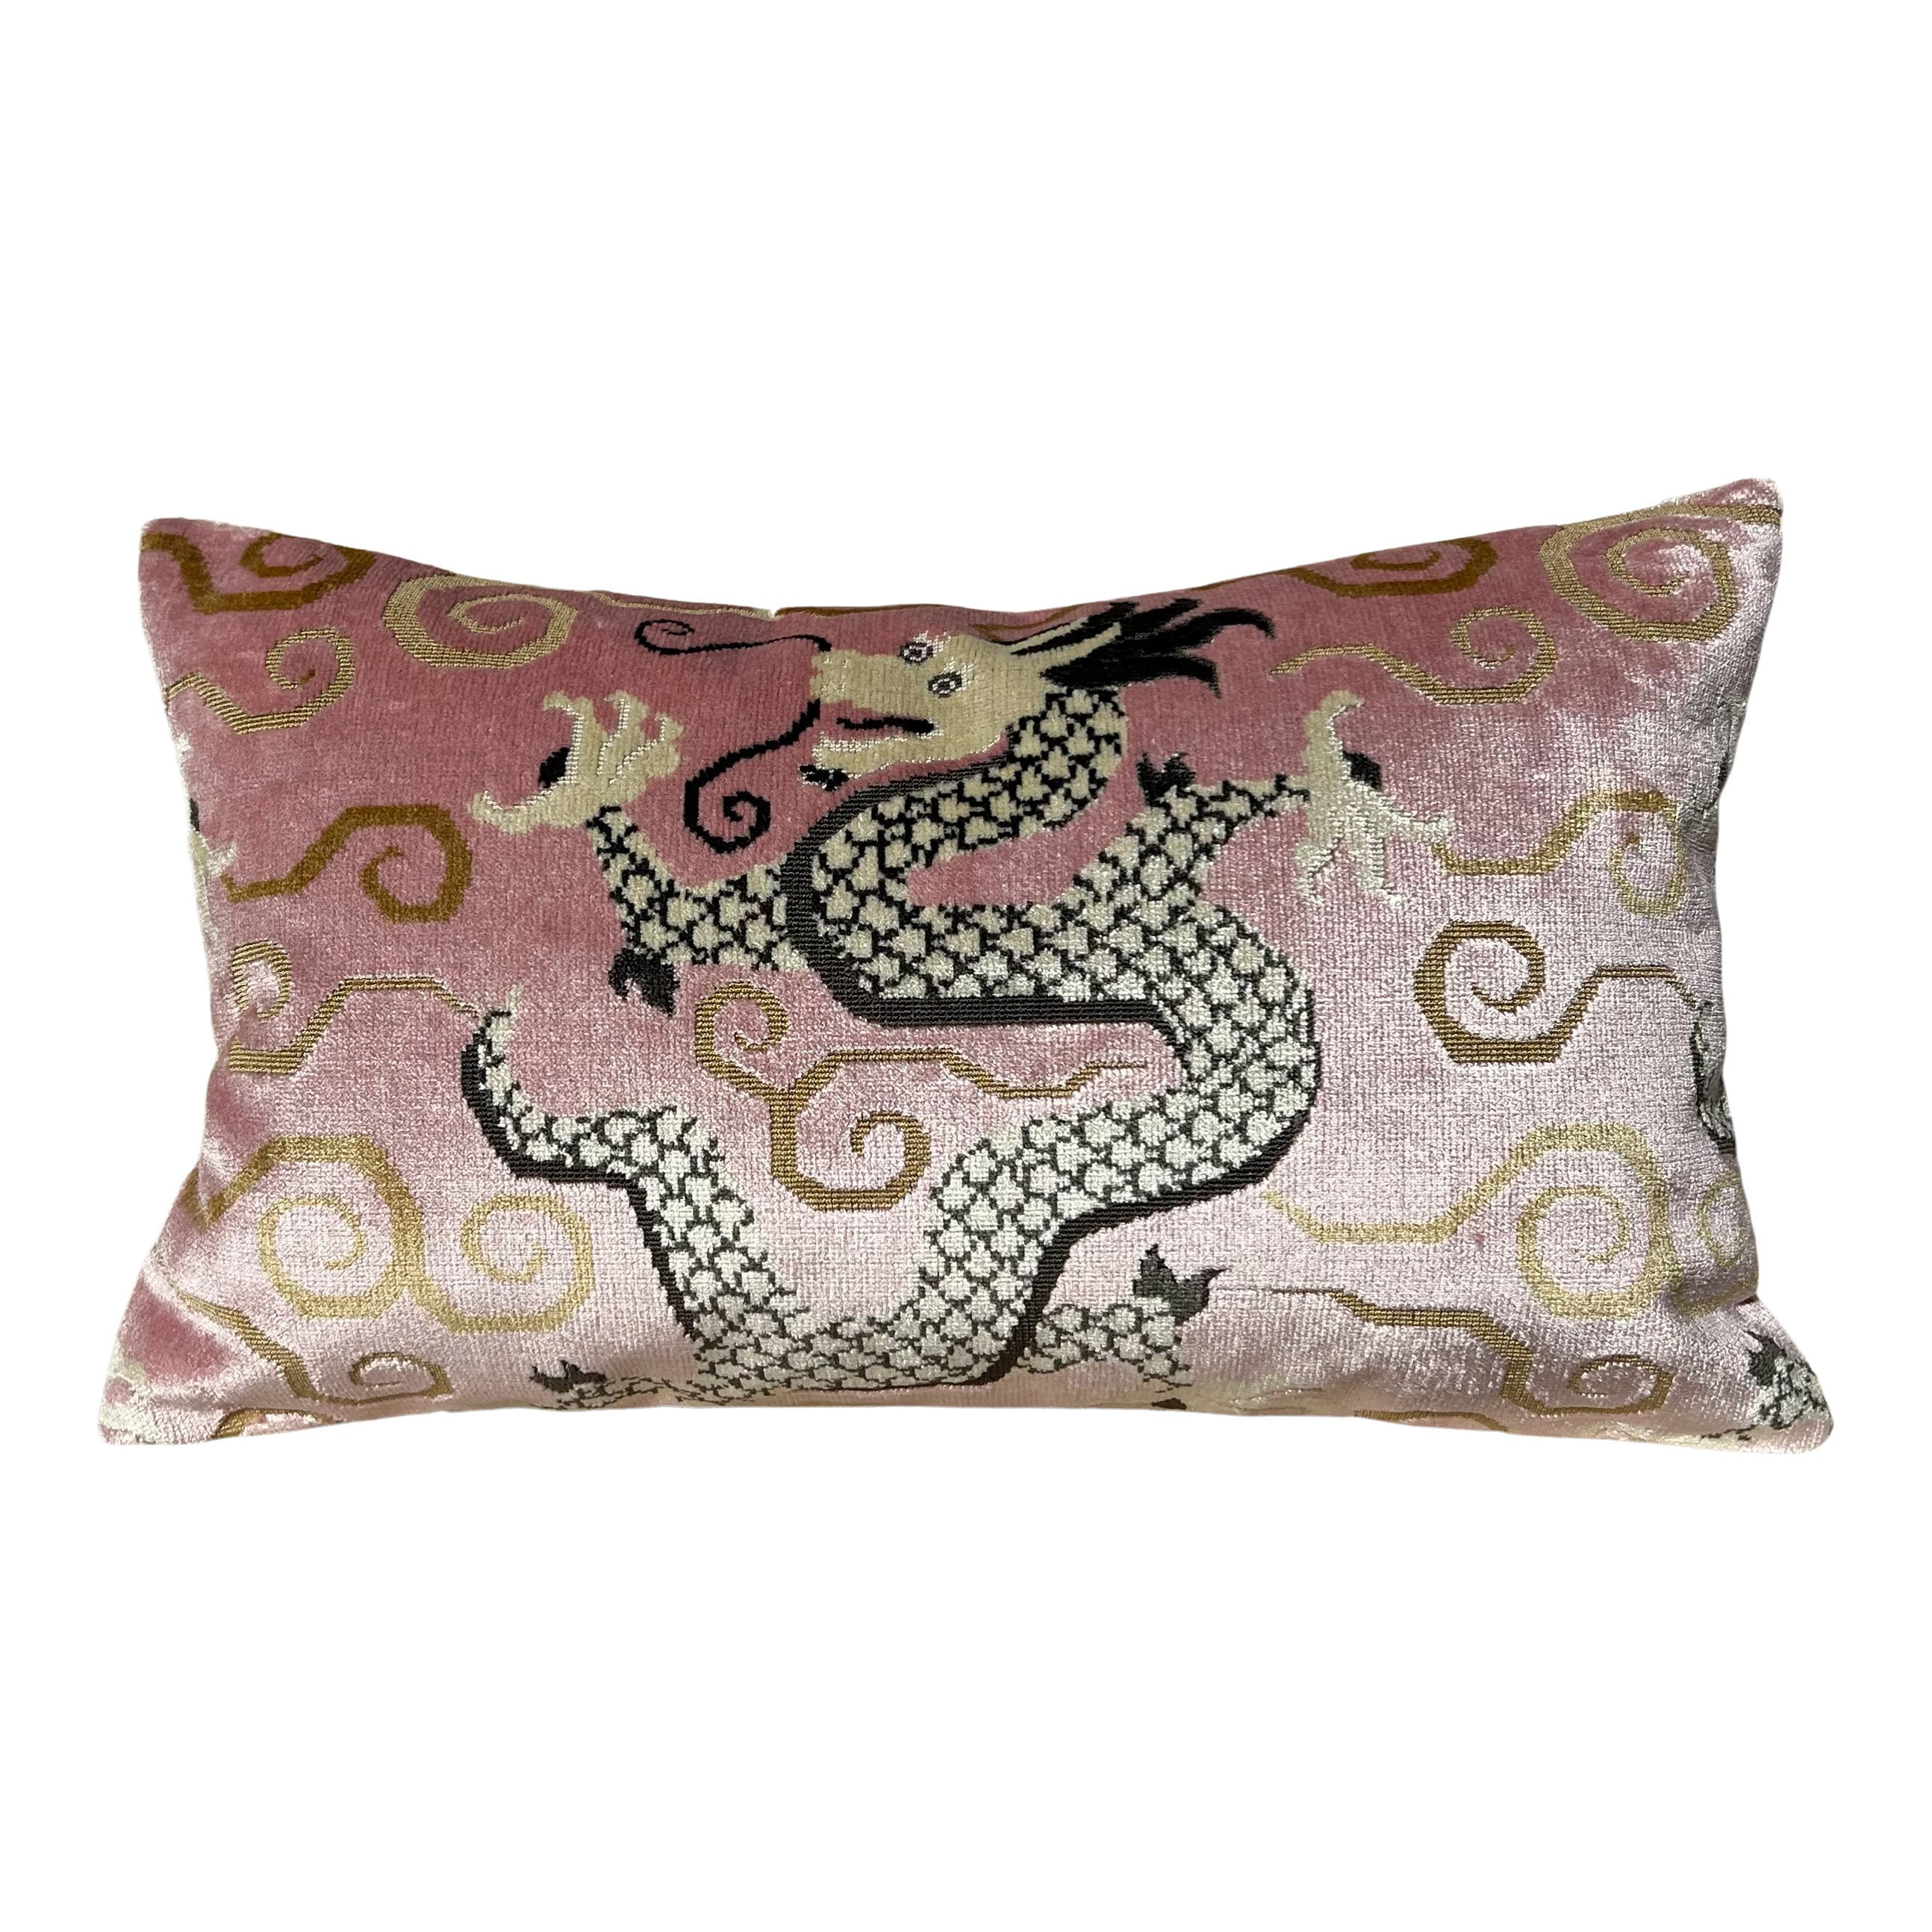 Schumacher Bixi Velvet Pillow in Rose Quartz. Dragon Velvet Pillows, Accent Decorative Pillow Cover, Chinoiserie Long Lumbar Pillow in Blush